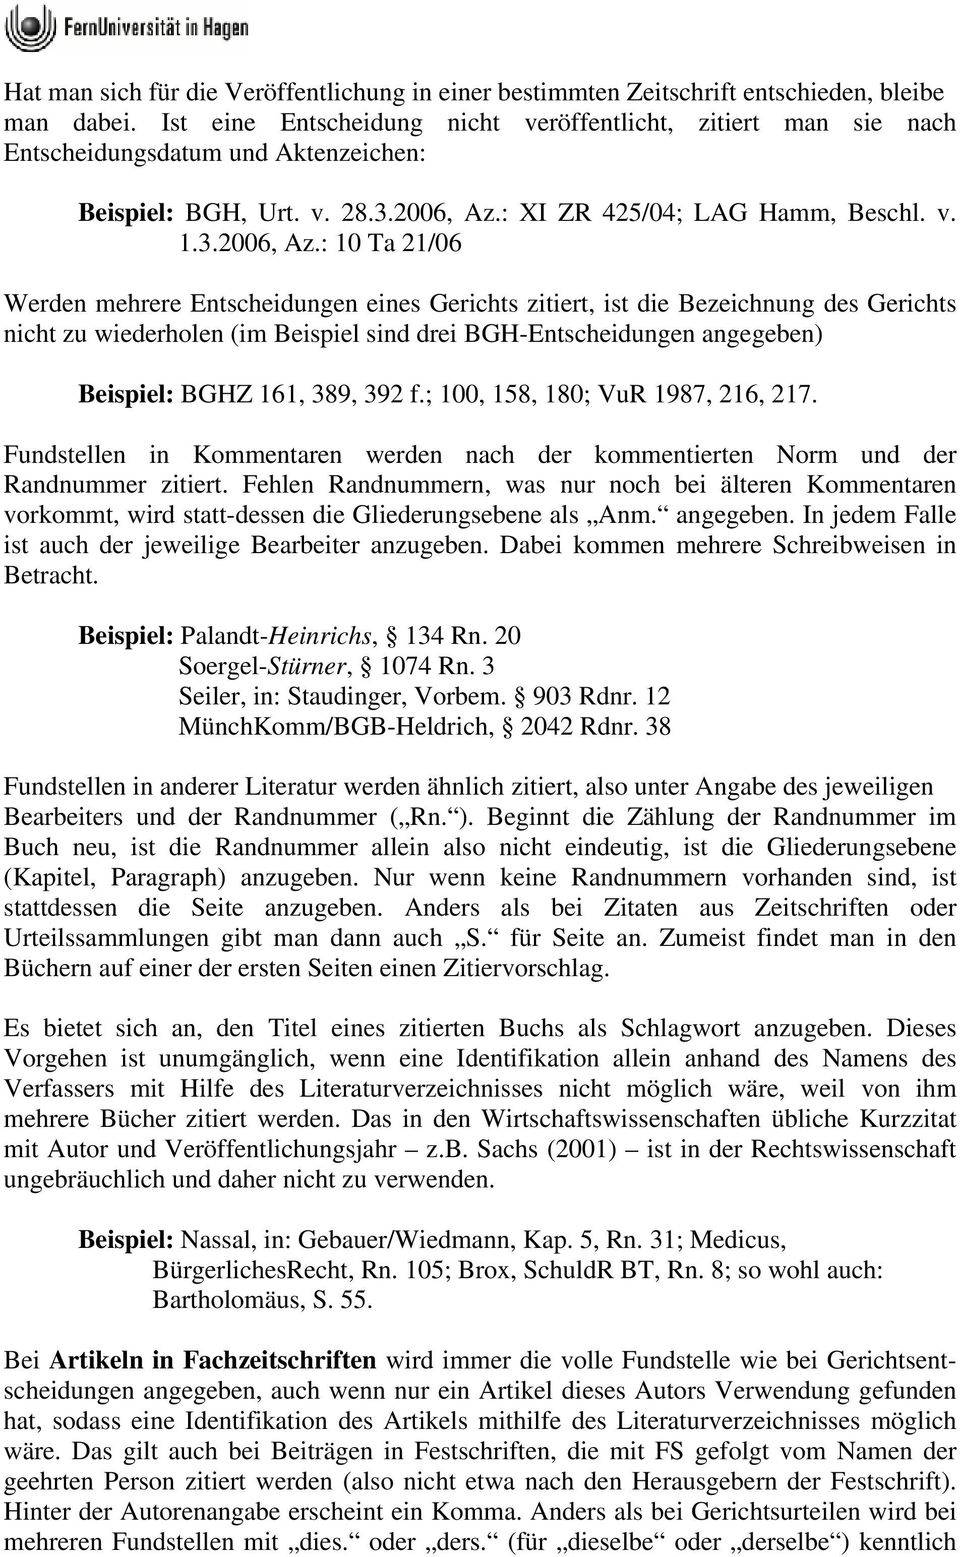 : XI ZR 425/04; LAG Hamm, Beschl. v. 1.3.2006, Az.